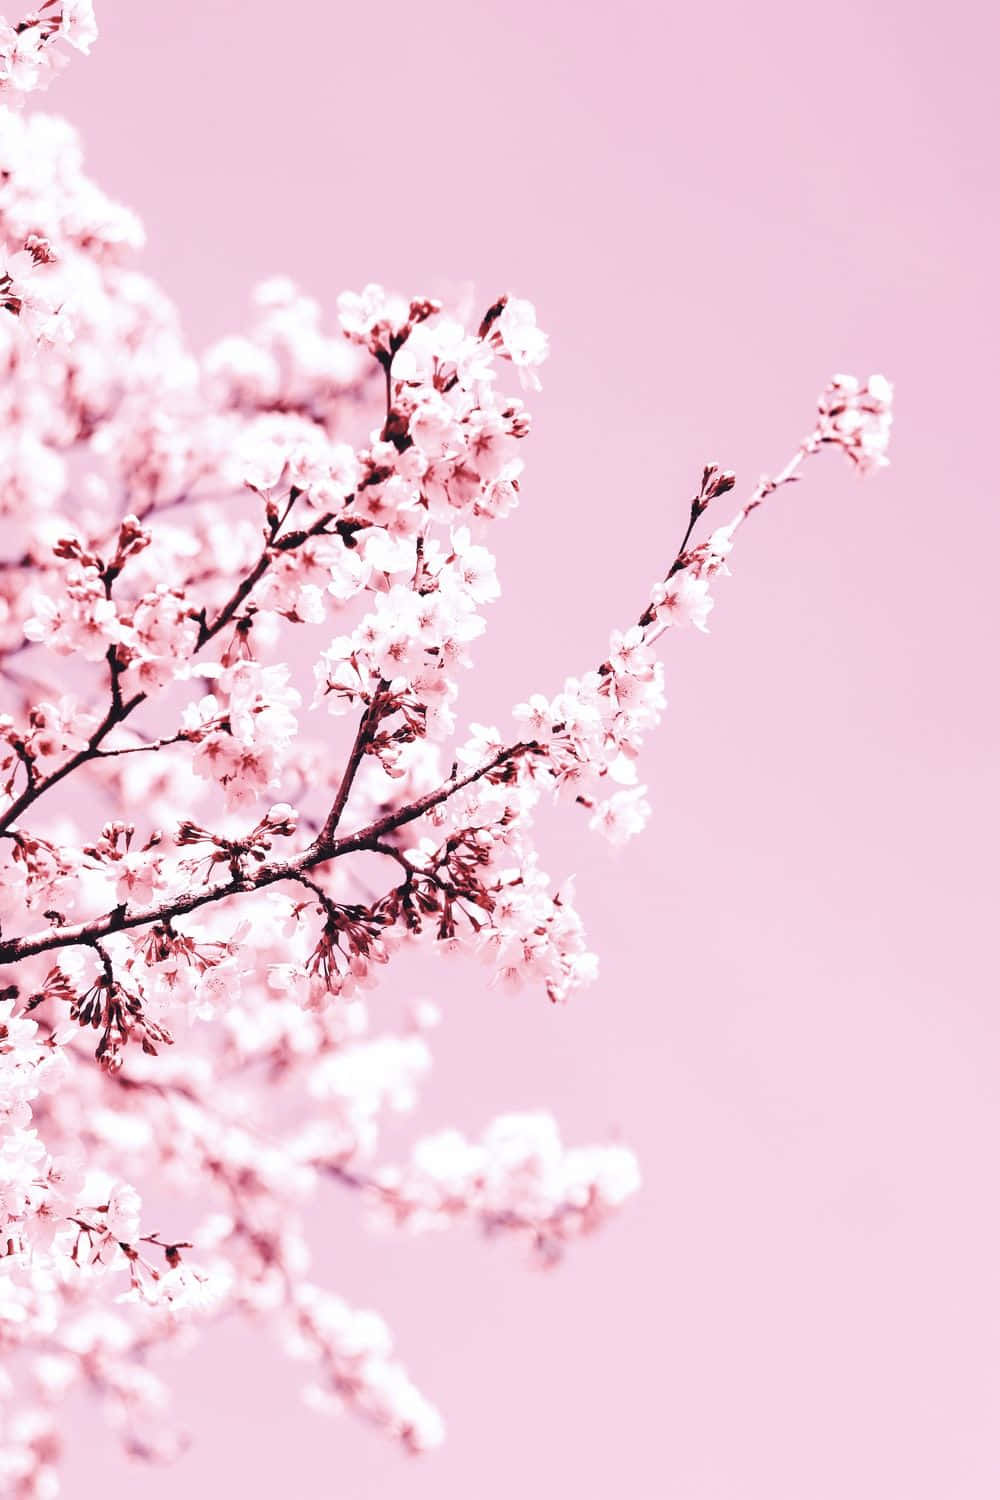 Unavista Fascinante De La Naturaleza: Un Árbol De Flores De Cerezo Rosa De Una Belleza Impresionante. Fondo de pantalla